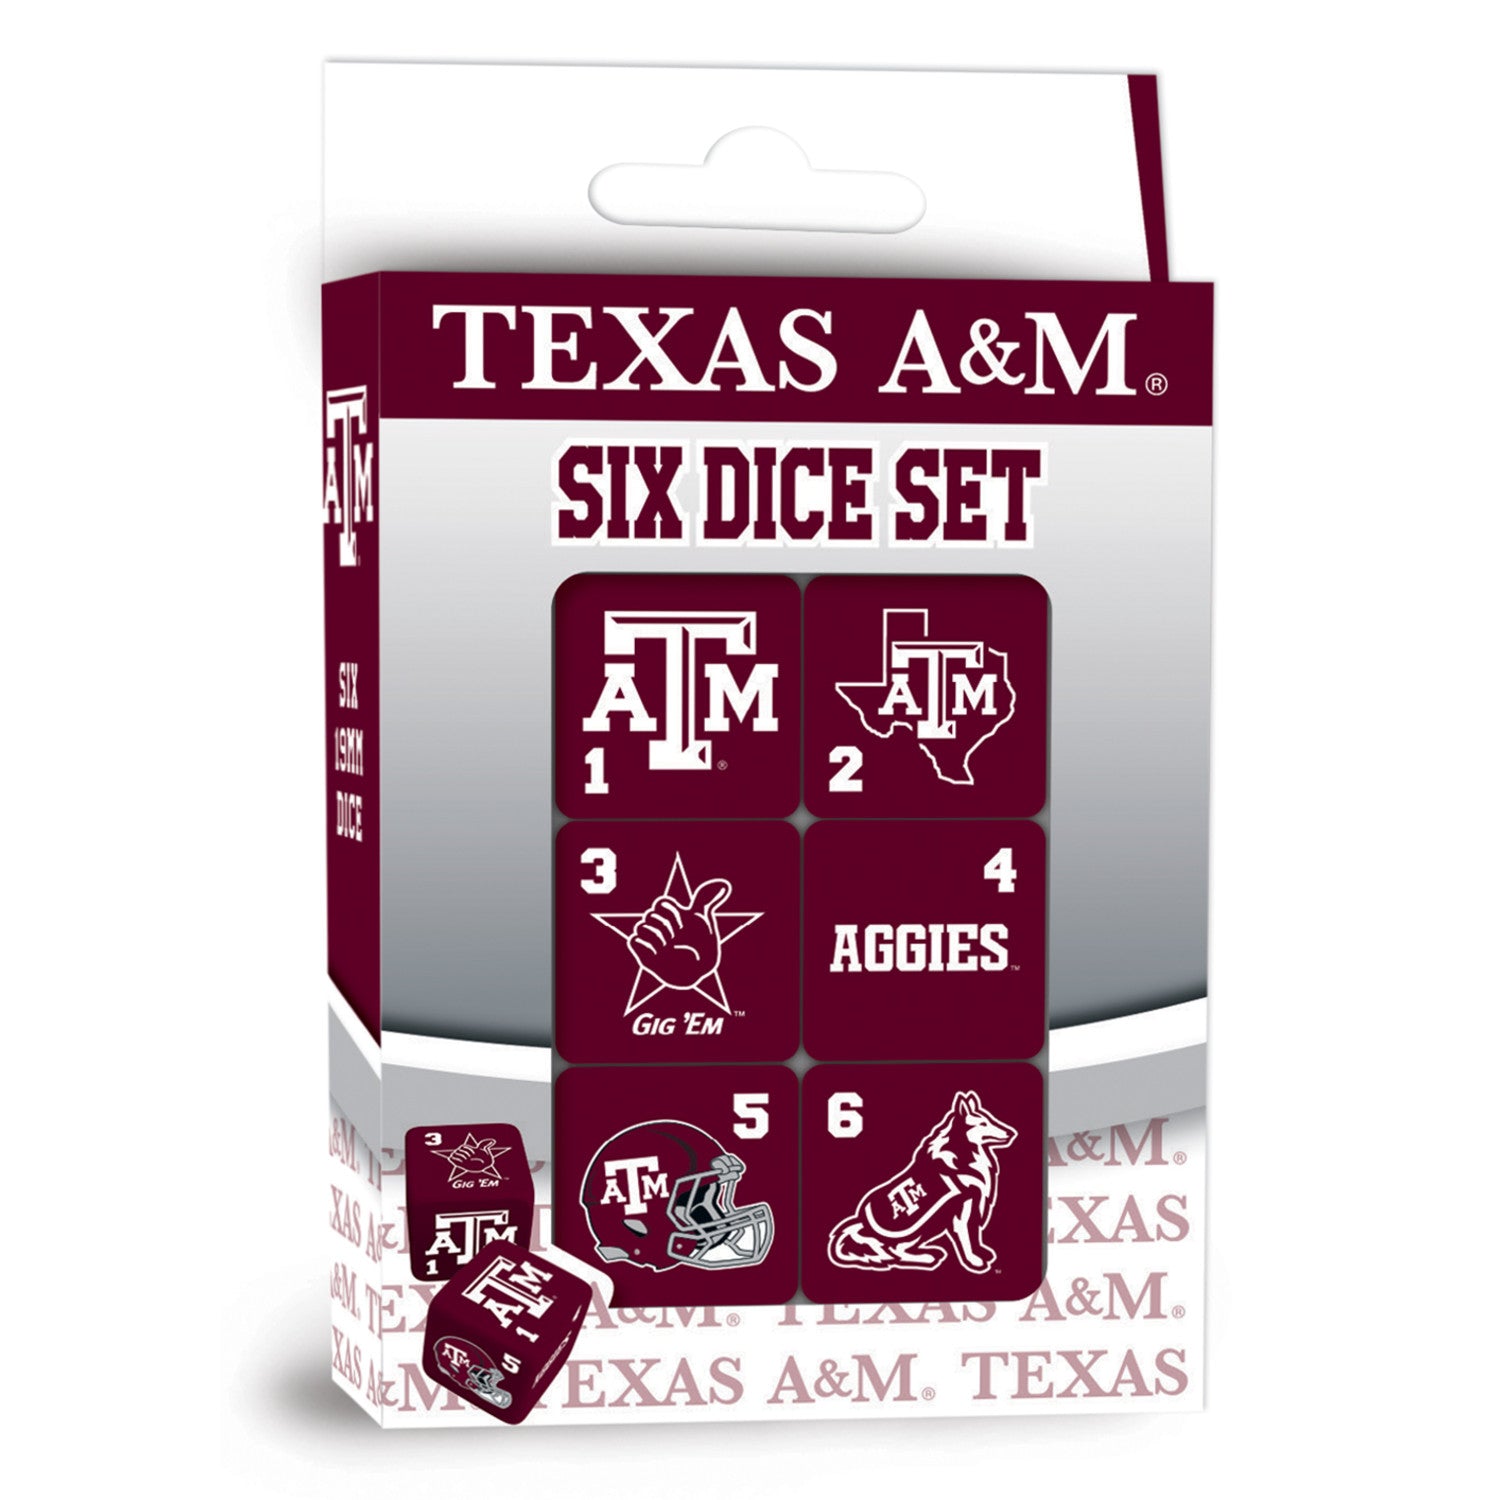 Texas A&M Dice Set - 19mm